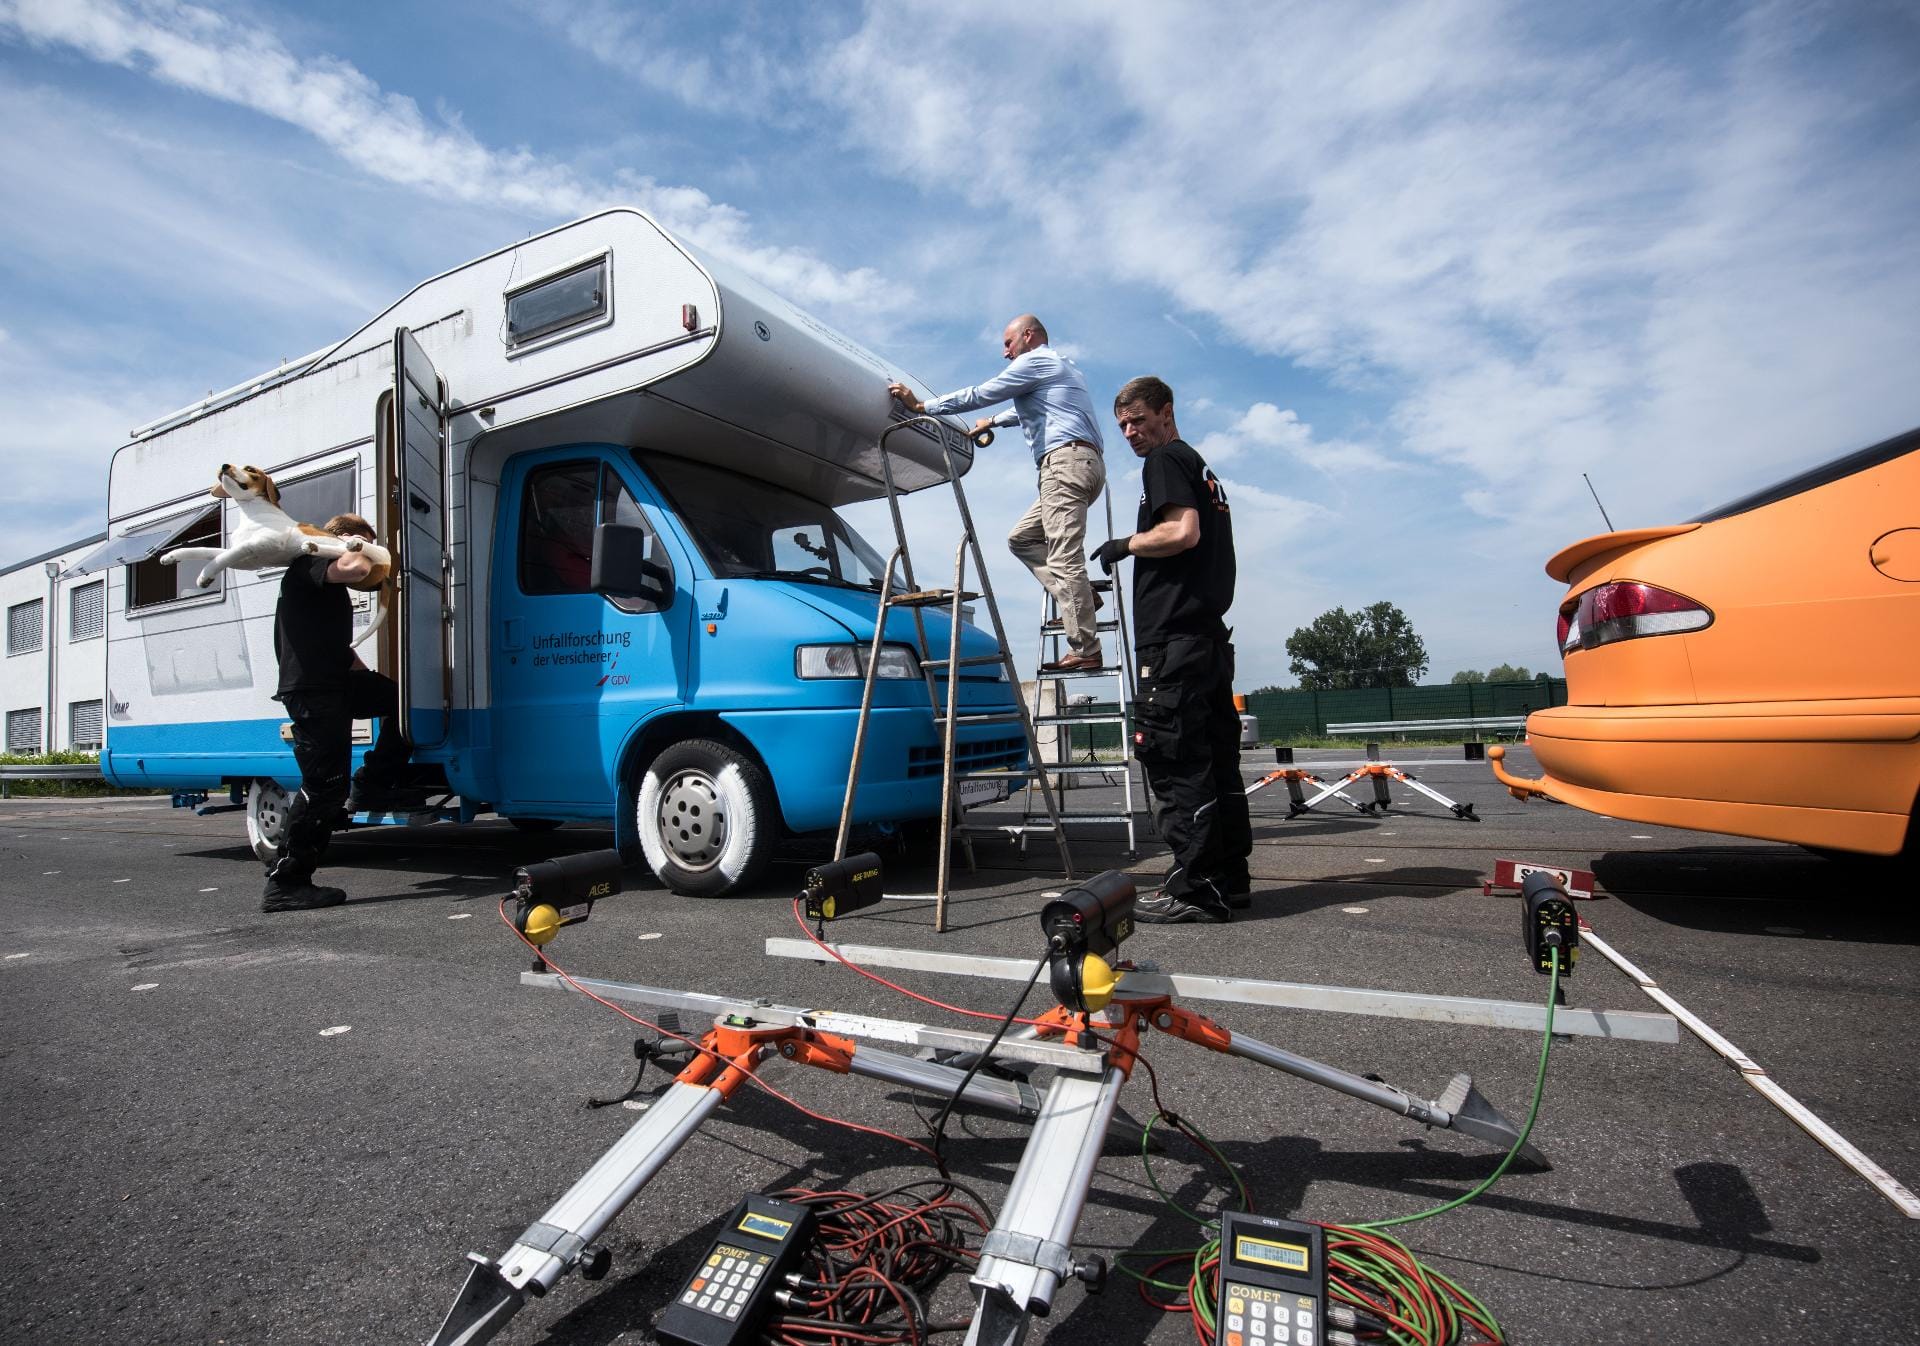 Forscher der Deutschen Versicherungswirtschaft wollen zeigen, was geschieht, wenn ein Campingmobil auf ein stehendes Auto auffährt.